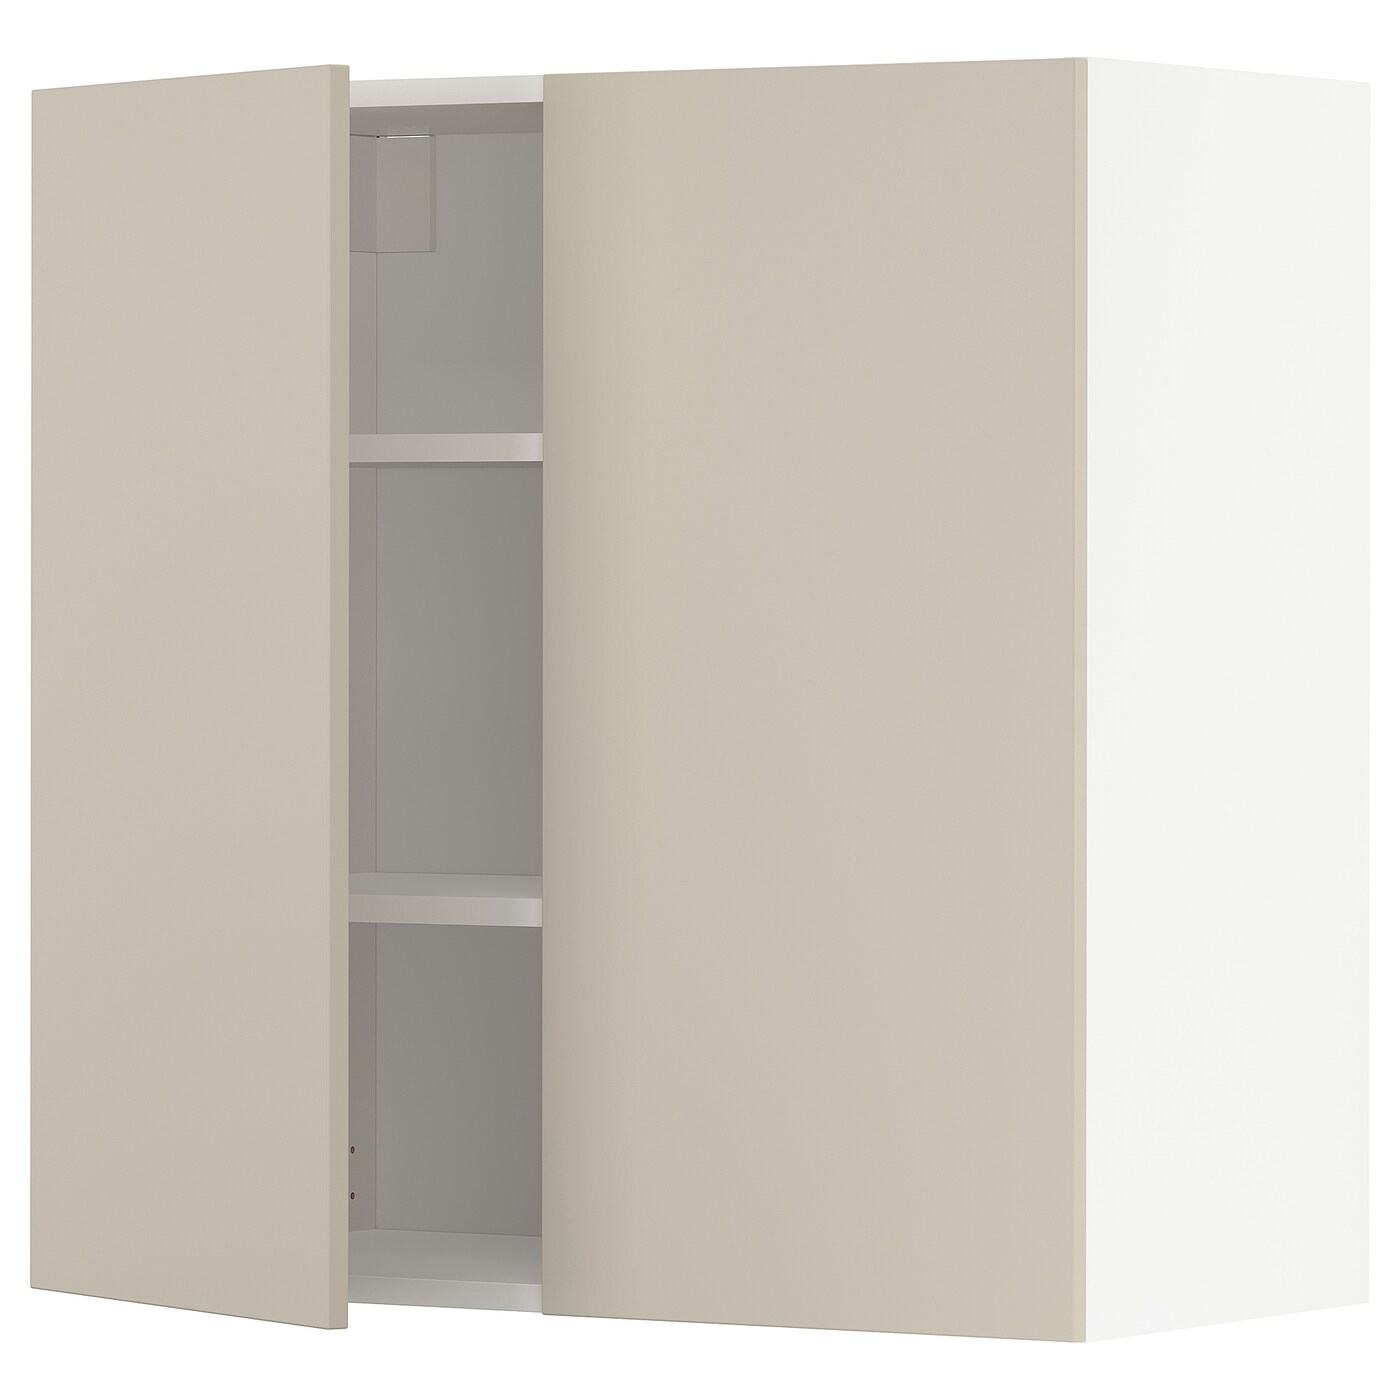 Навесной шкаф с полкой - METOD IKEA/ МЕТОД ИКЕА, 80х80 см, белый/бежевый